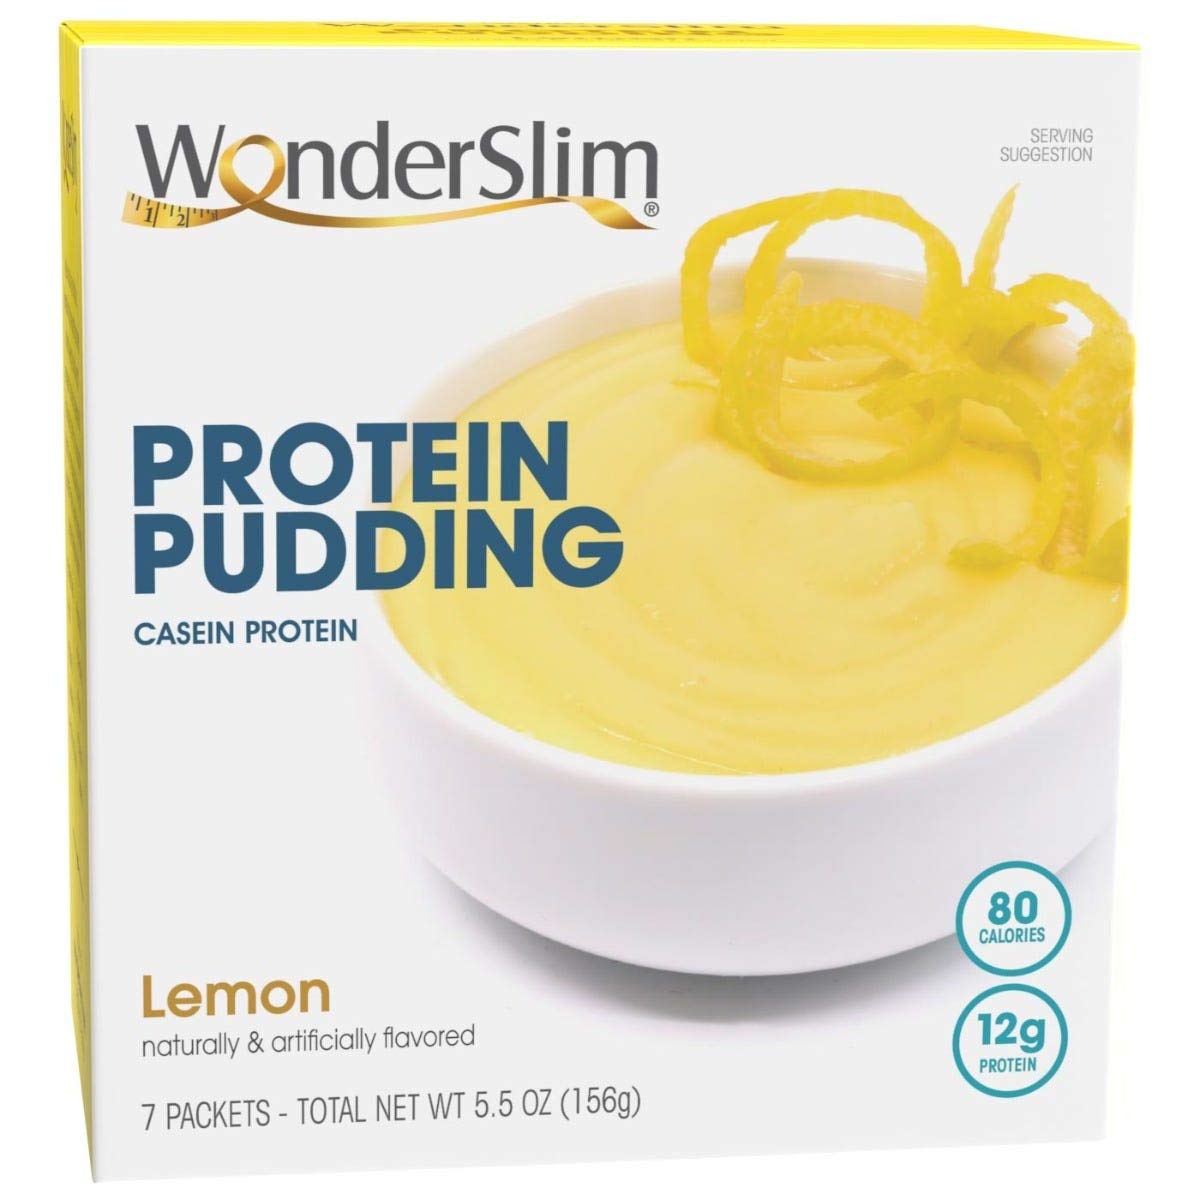 WonderSlim Protein Pudding, Lemon, 12g Protein, Gluten Free (7ct)